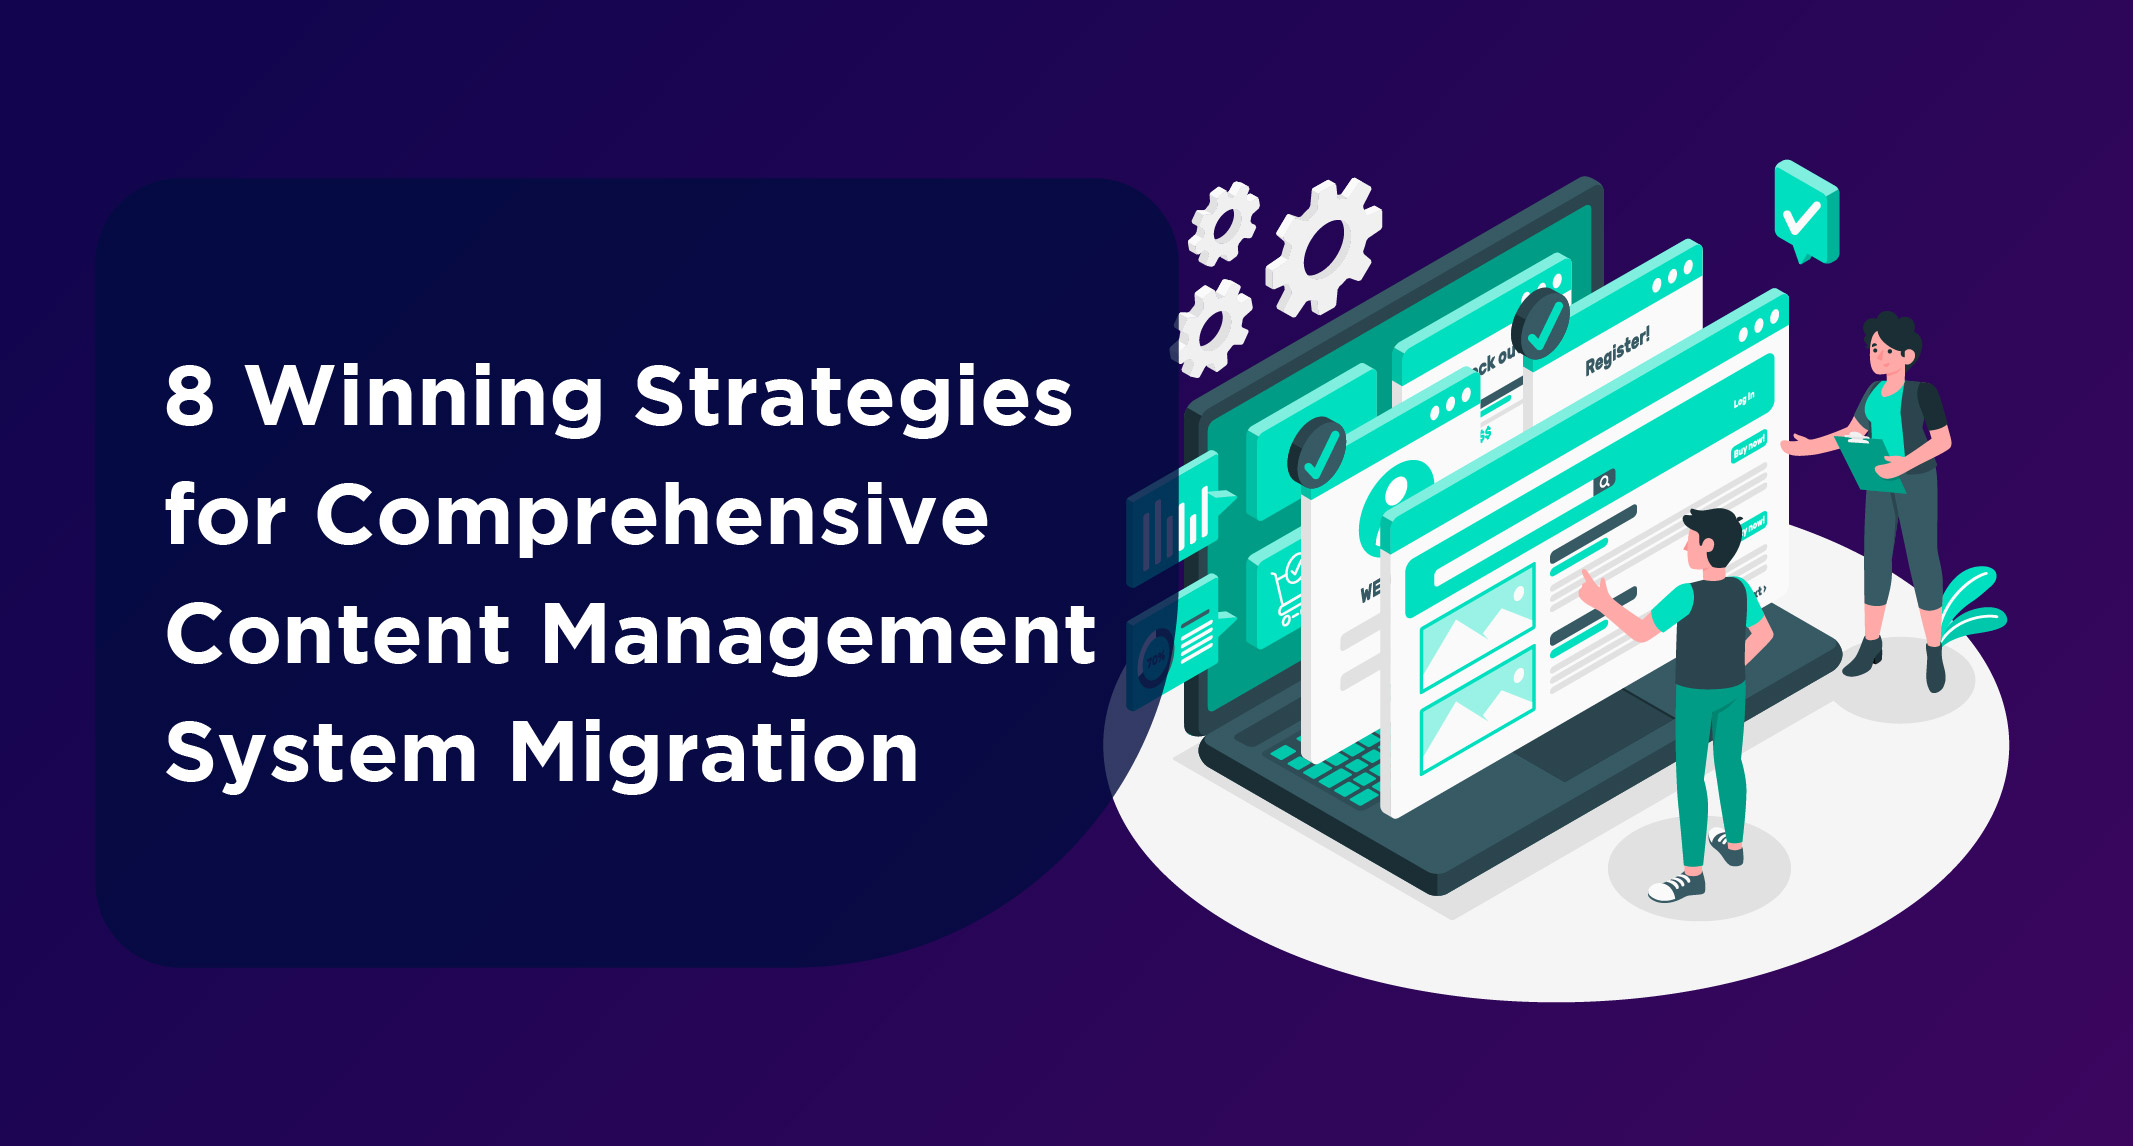 Content Management System Migration